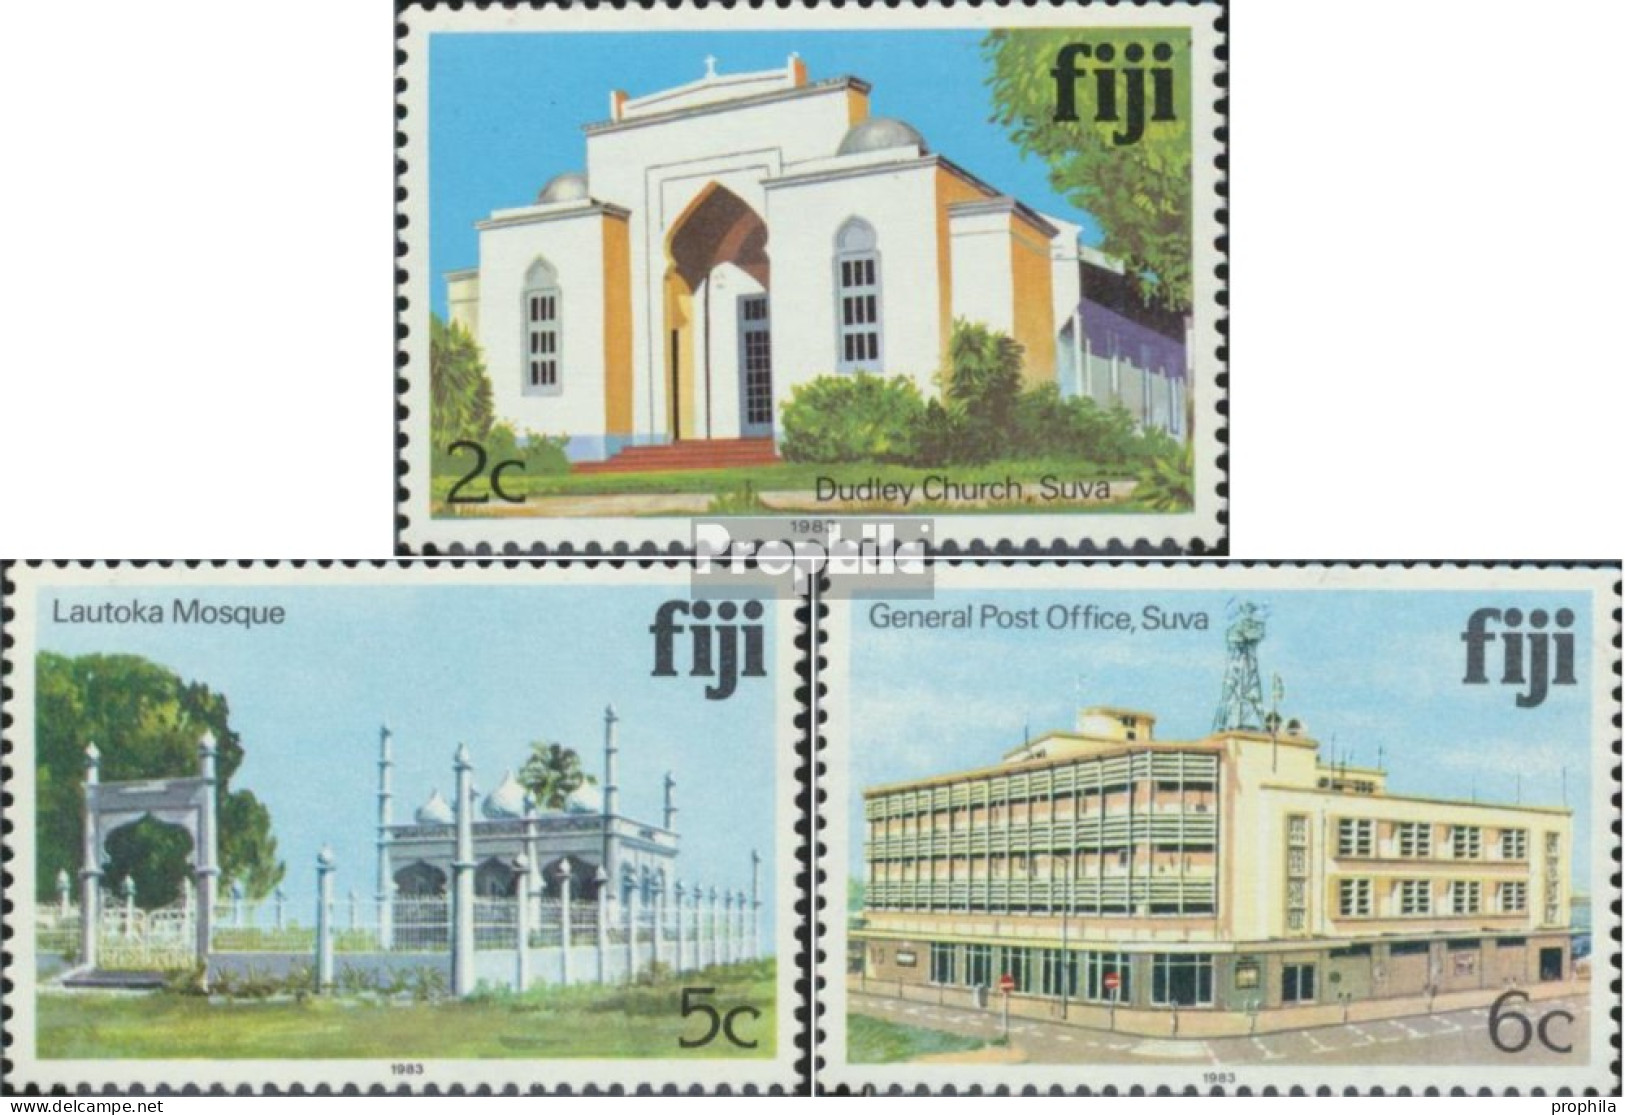 Fidschi-Inseln 400II,402II,403II (kompl.Ausg.) Mit Jahreszahl 1983 Postfrisch 1983 Sehenswürdigkeiten - Fidji (1970-...)